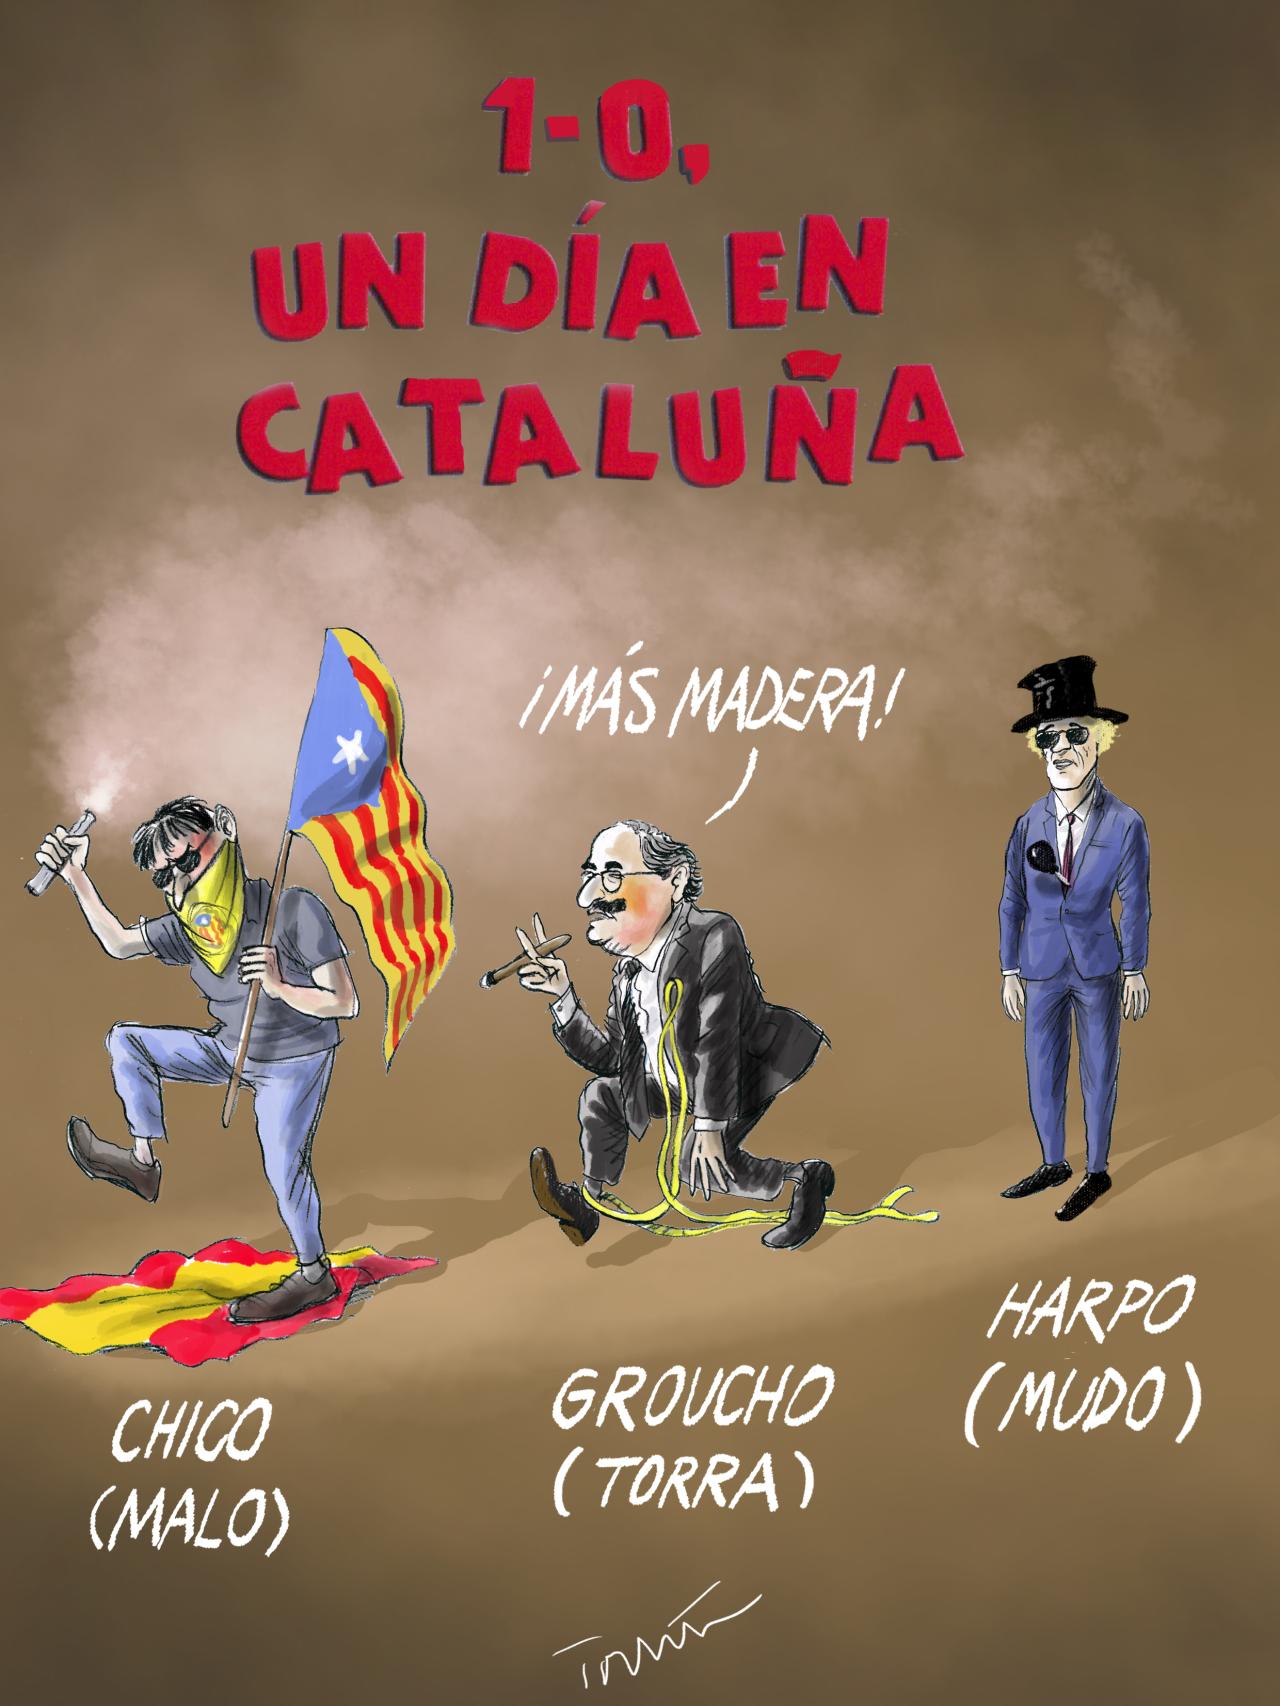 1-O, un día en Cataluña